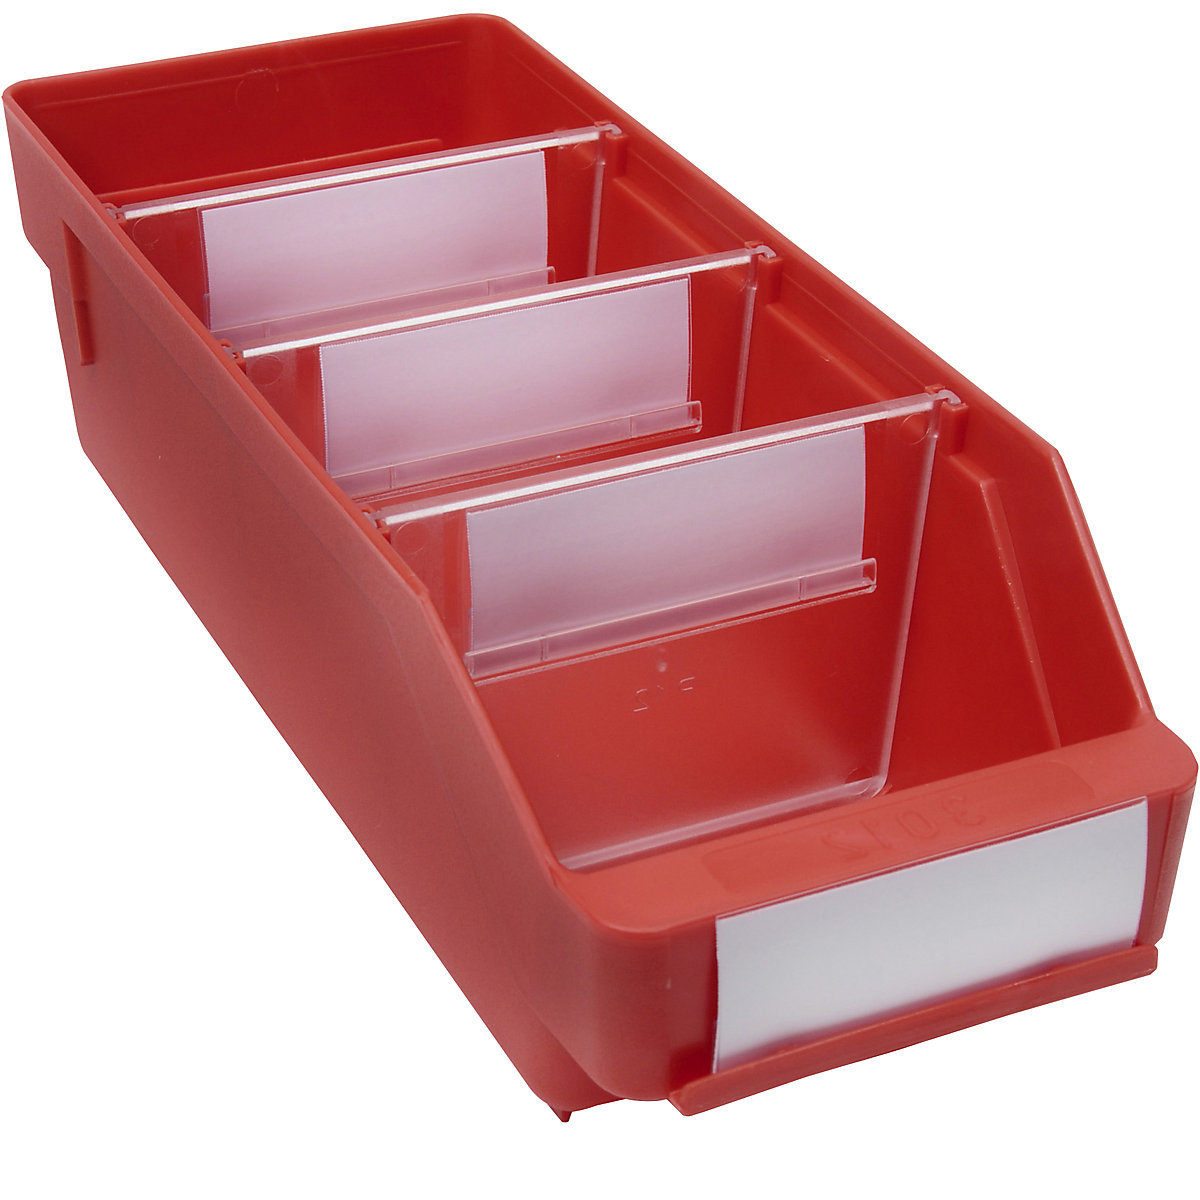 Regalkasten aus hochschlagfestem Polypropylen STEMO, rot, LxBxH 300 x 118 x 95 mm, VE 30 Stk-10